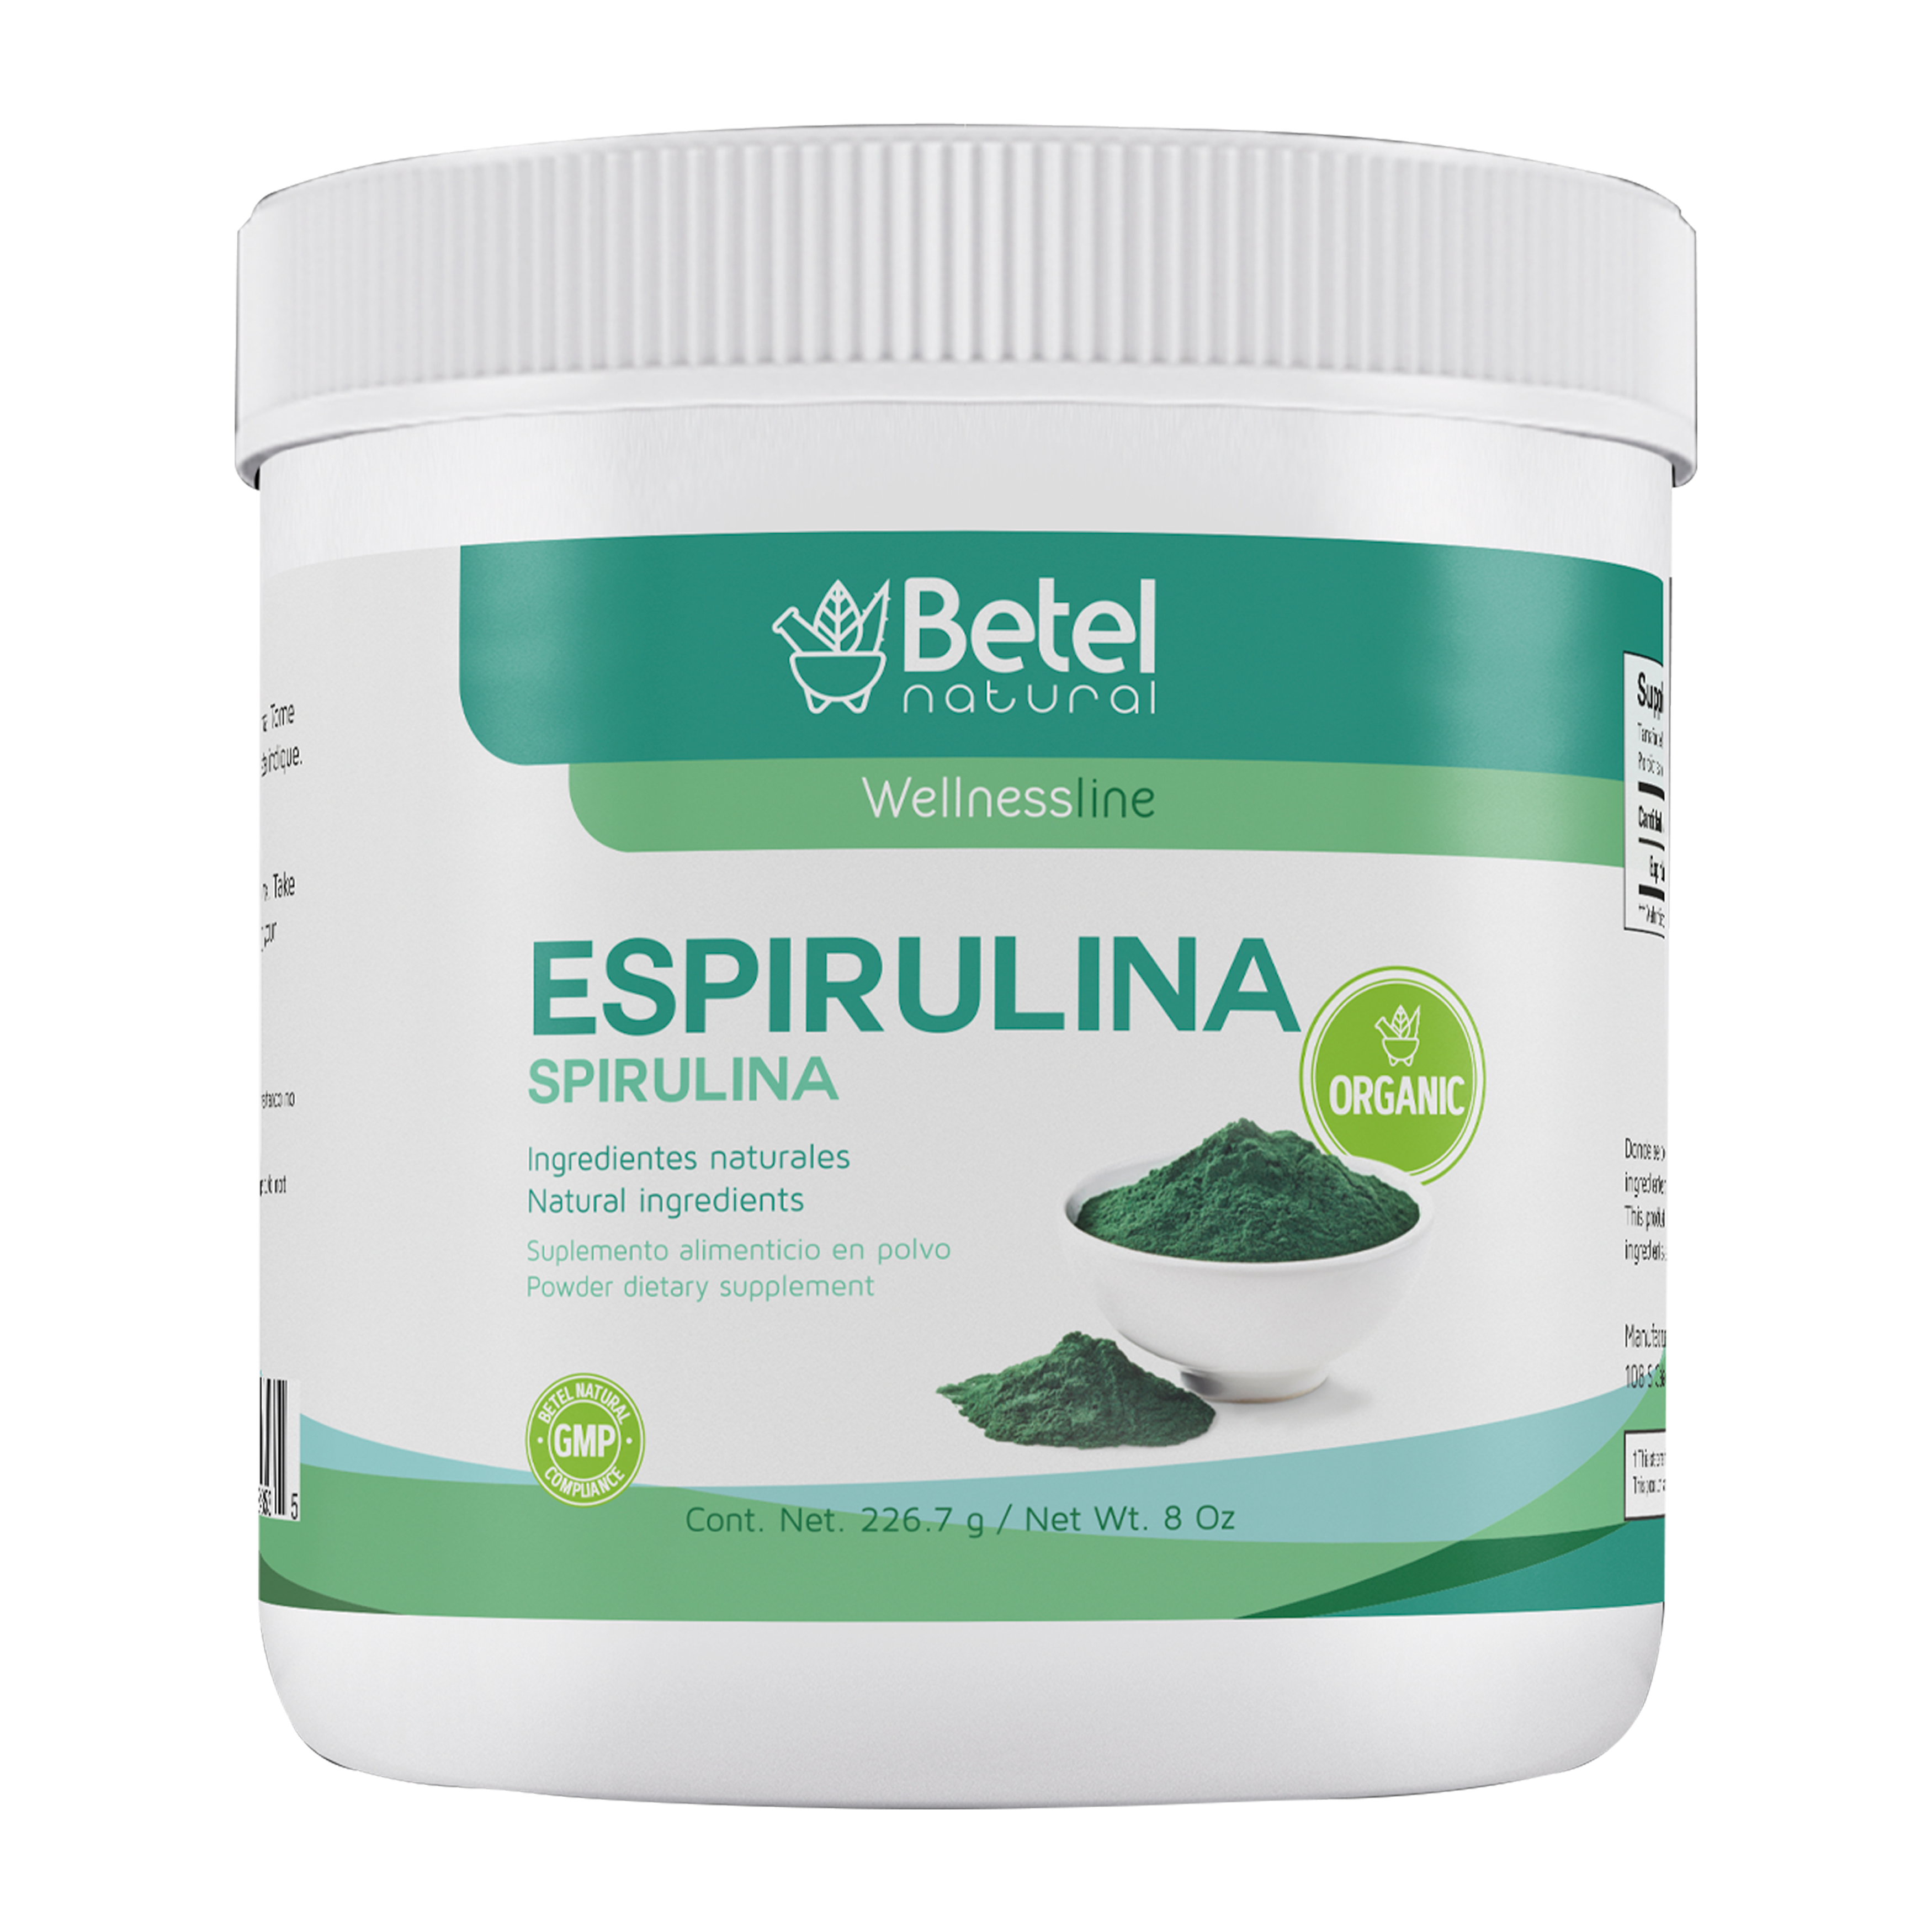 klem Fobie Voorzitter BETEL NATURAL Spirulina (Espirulina), Wellness Line, Net. Wt. 8 oz –  Bestdeal-shop.com